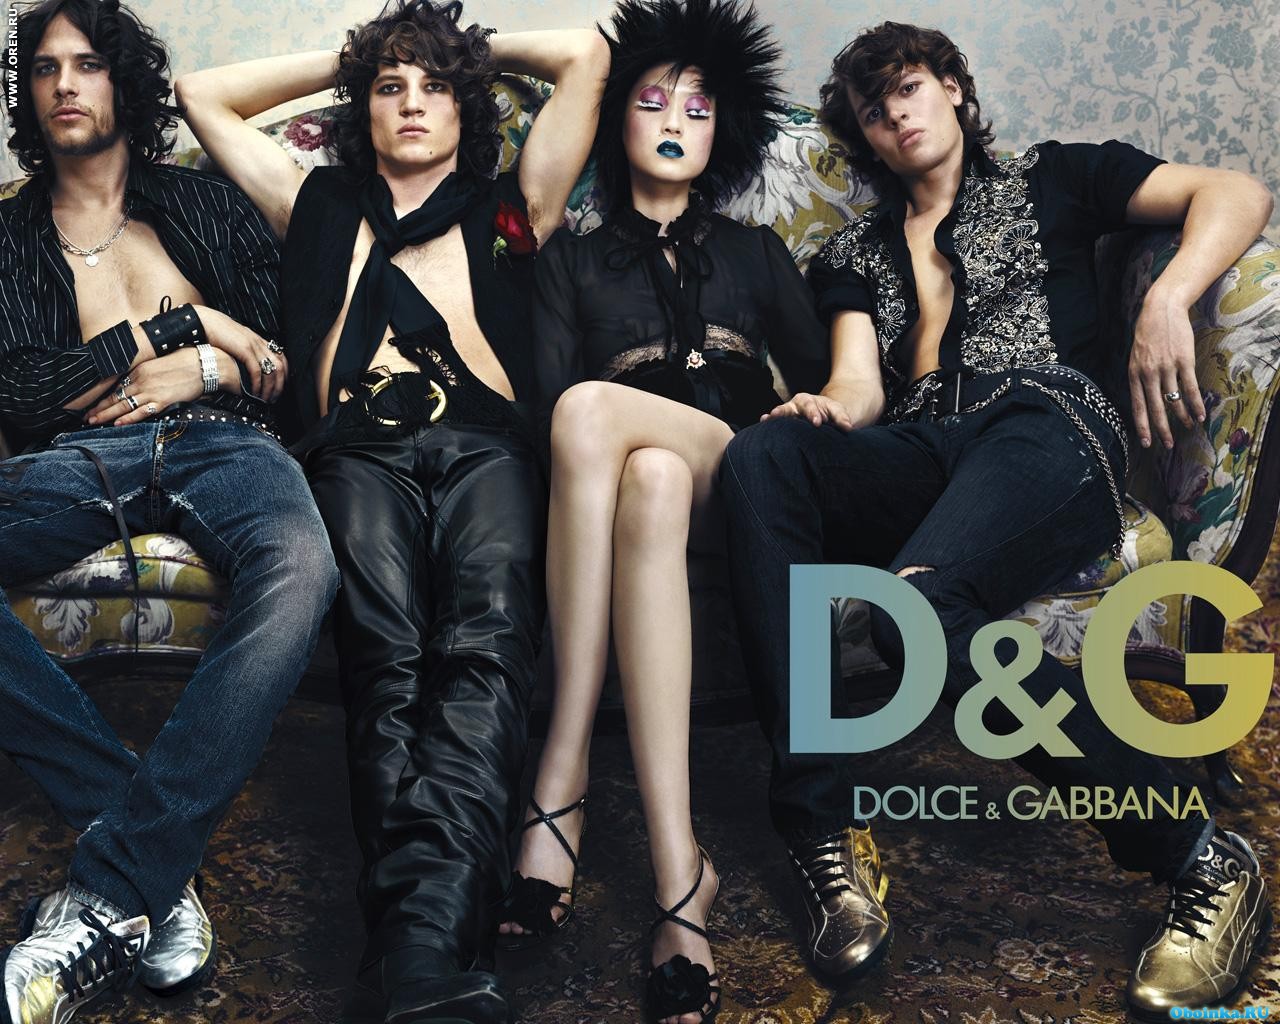 Обои на рабочий стол - Бренды - Скачать обои - Dolce & Gabbana. 